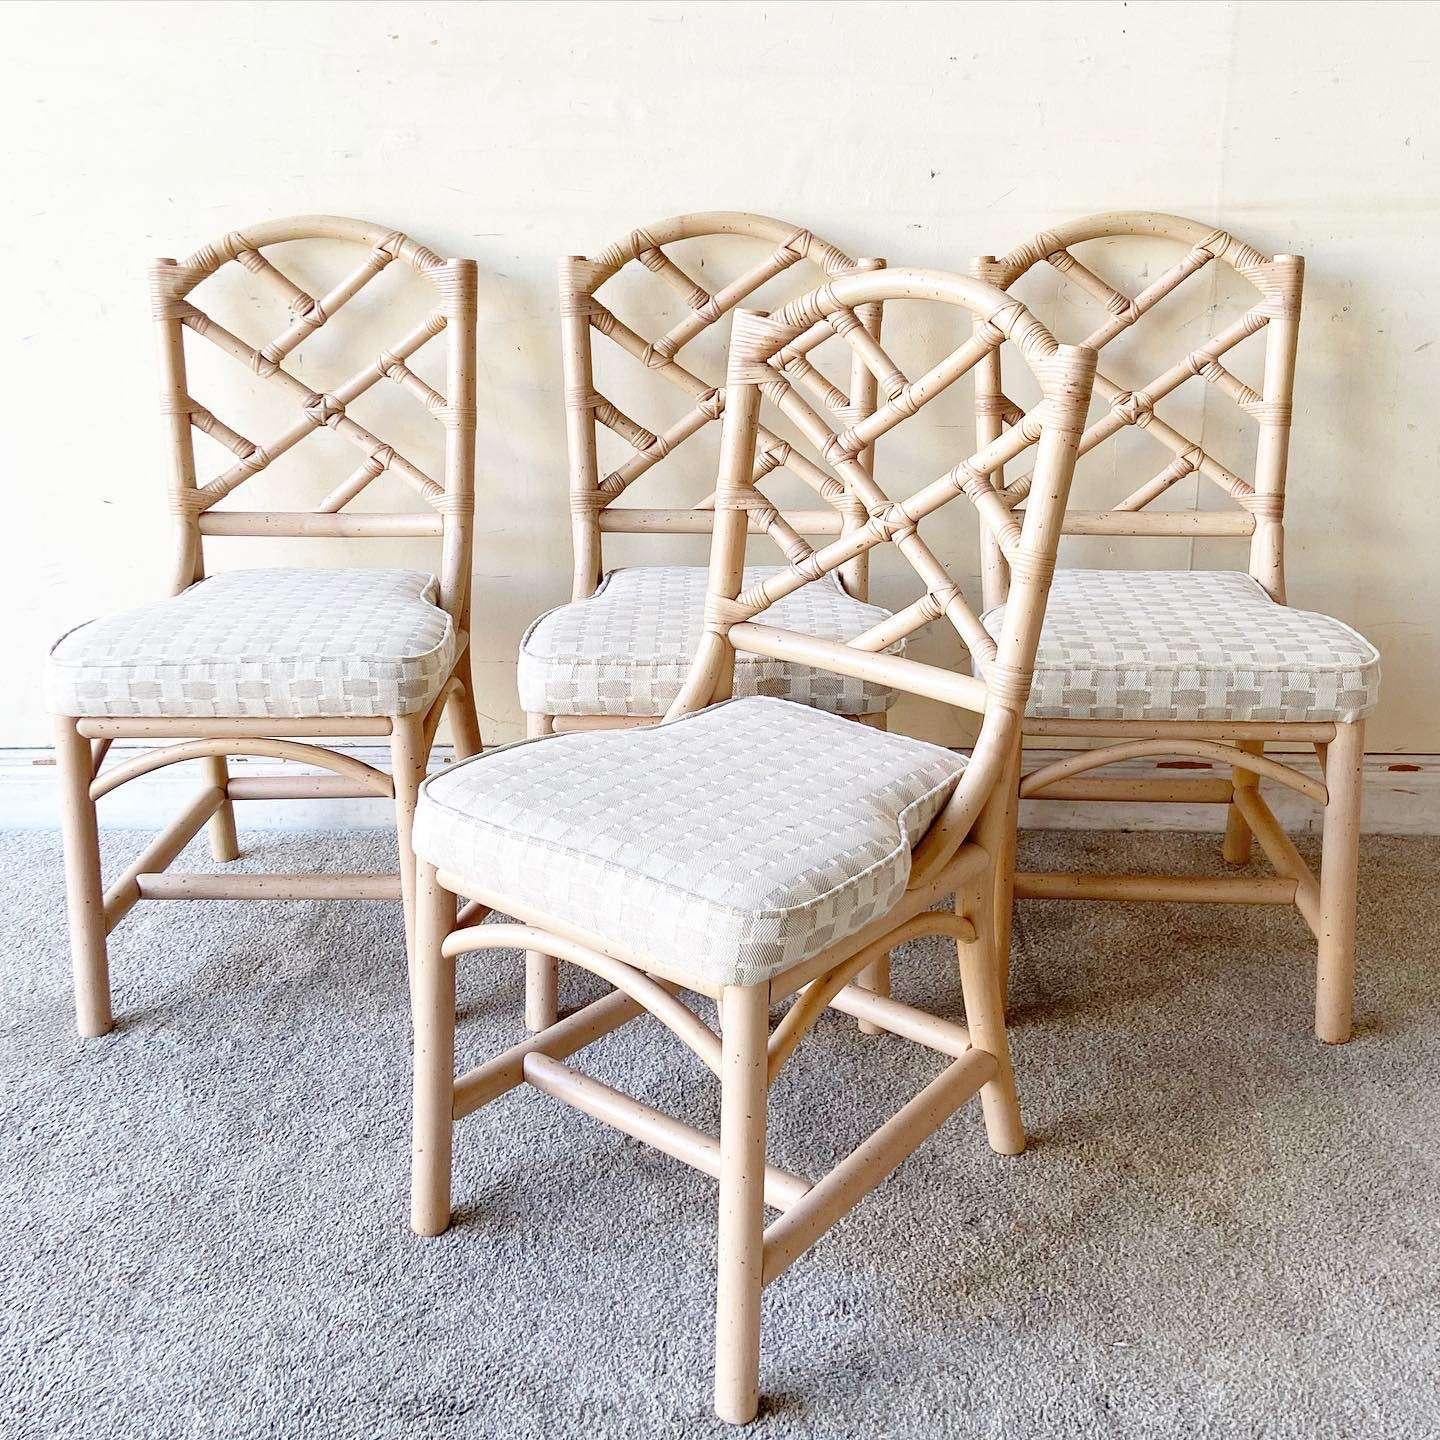 Exceptionnel ensemble de 4 chaises de salle à manger vintage en bois courbé et rotin de style Chippendale. Finition lavée et tachetée.

La hauteur du siège est de 18,5 pouces